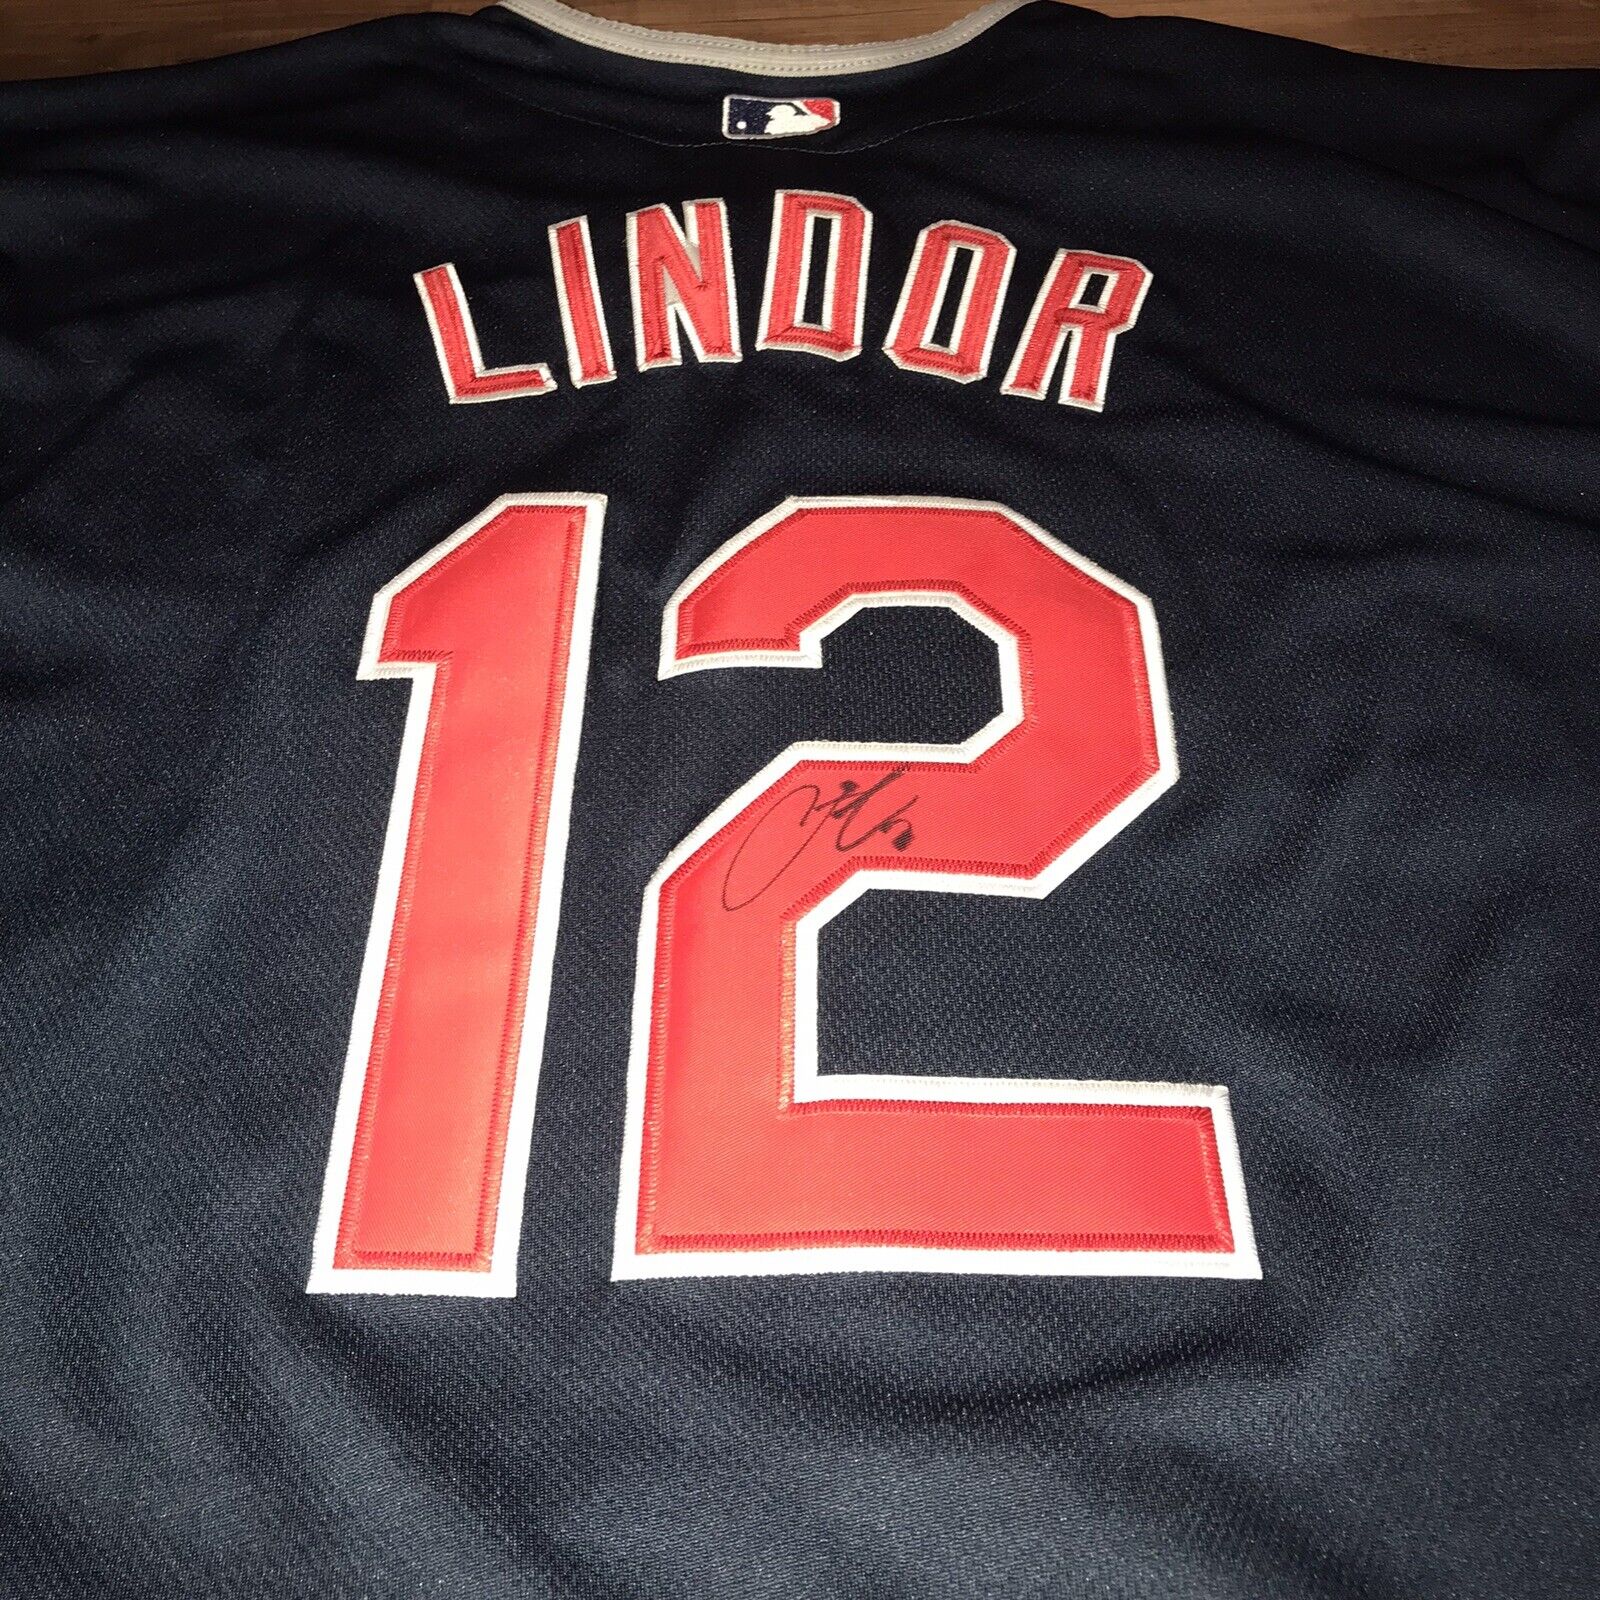 Fransico Lindor signed jersey MLB CLEVELAND INDIANS